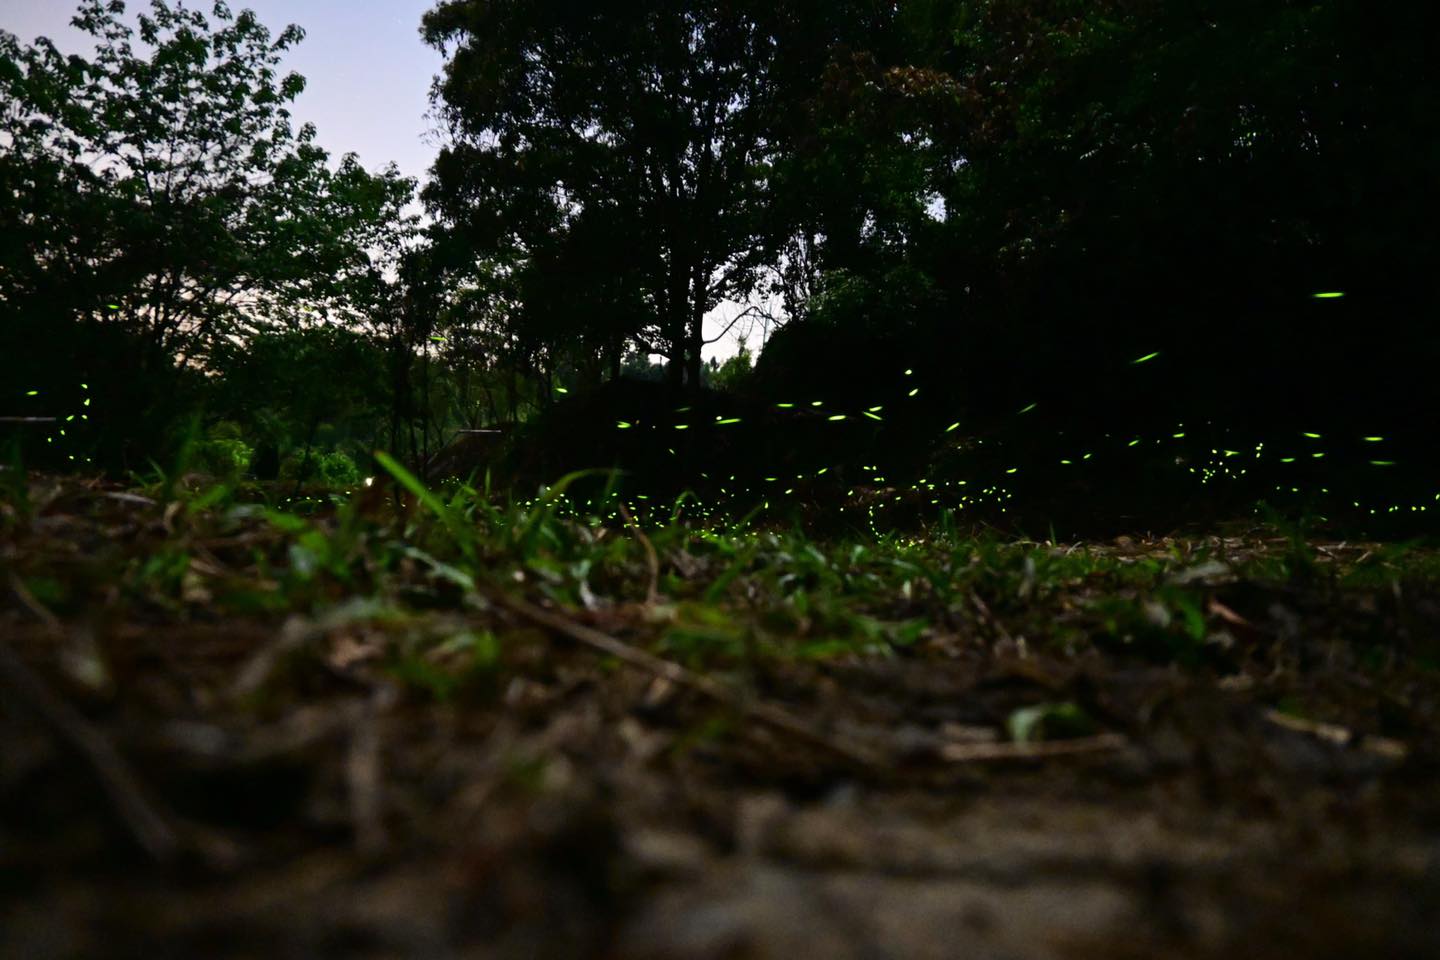 大窩山生態園區位於「苗栗」縣大湖鄉，三百多公頃的園區保留原始林相，近年因村民復育螢火蟲有成而聲名大噪。入夜之後，滿山滿谷的螢火蟲有如滿天星斗，令人驚艷